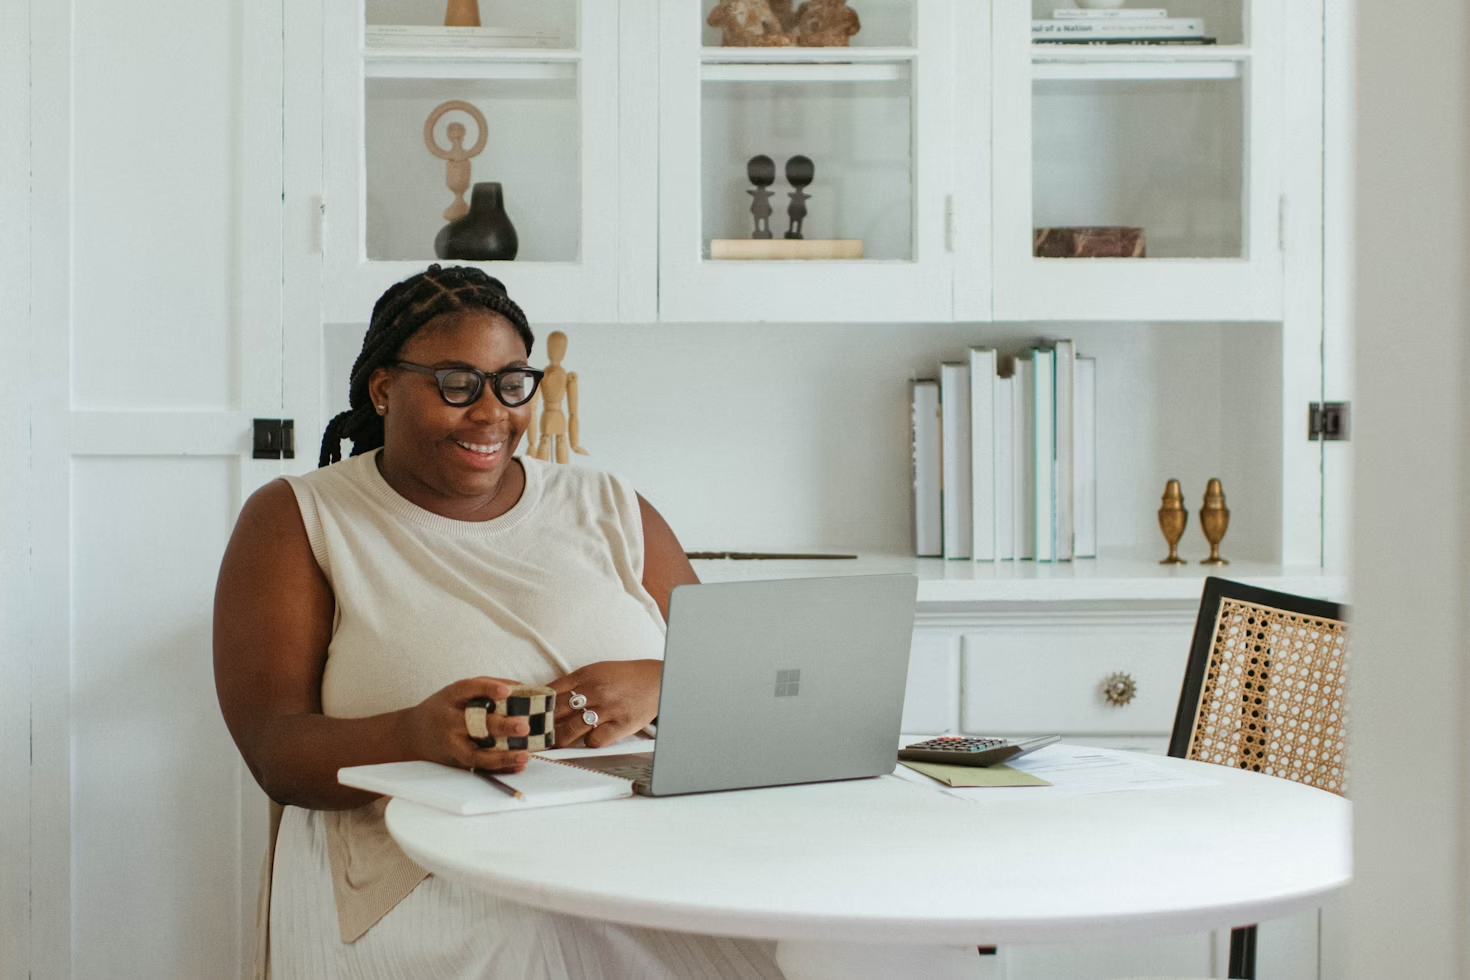 Femme portant des lunettes et tenant une tasse à café regardant son Macbook assise à une table ronde blanche